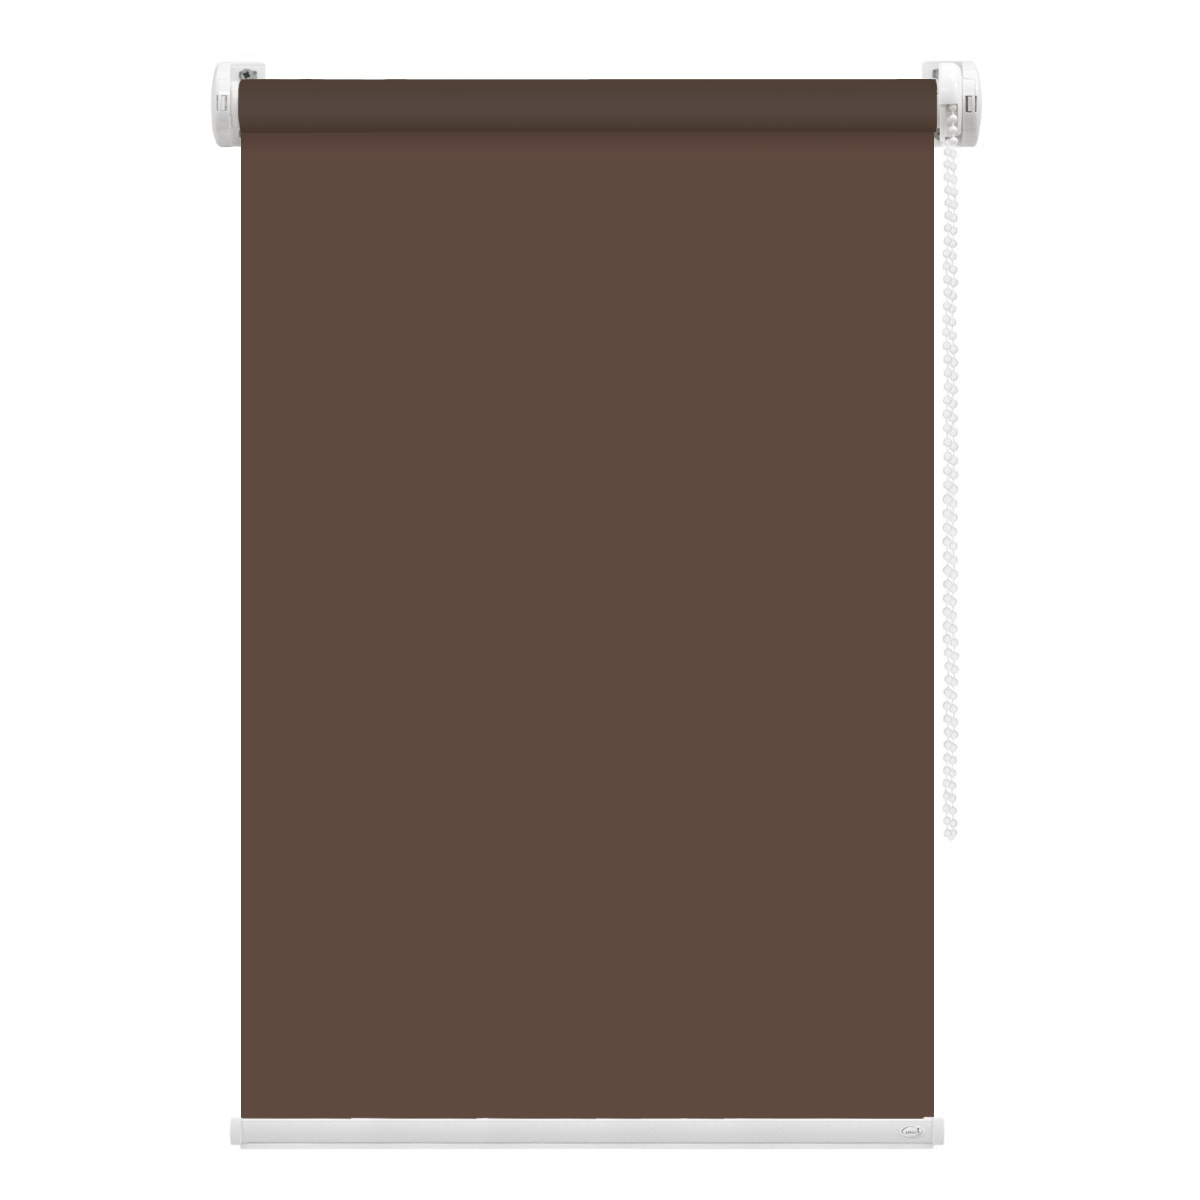 Рулонная штора FixLine Amigo Basic коричневая 60х160 см